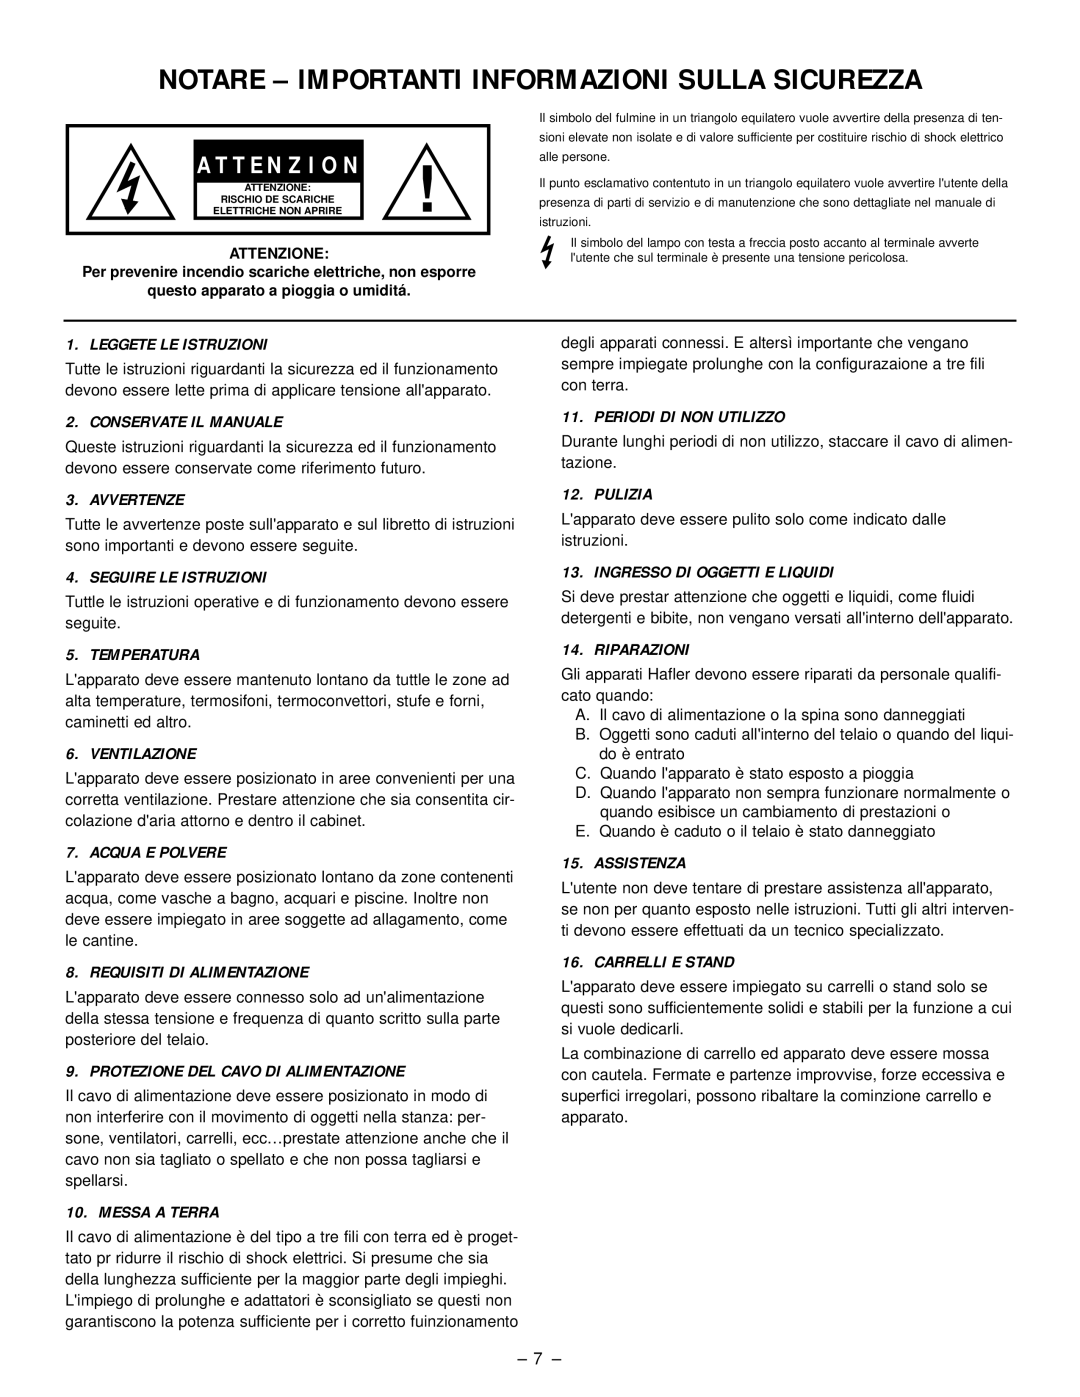 Hafler SR2600, SR2300 owner manual Notare - Importanti Informazioni Sulla Sicurezza, A T T E N Z I O N 